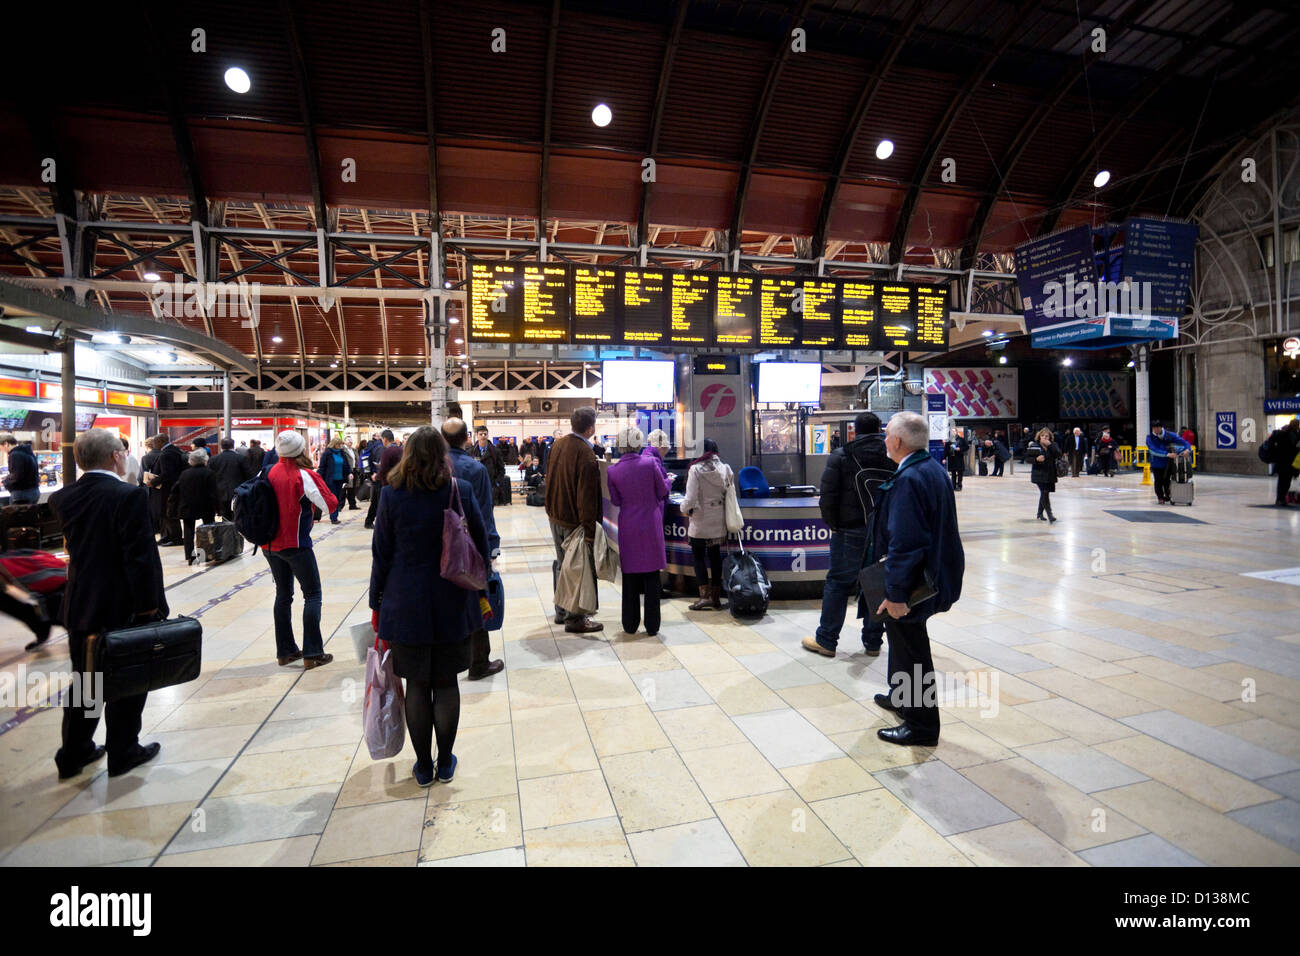 Chèque de voyage le départ des panneaux d'information, la gare de Paddington, Londres, Angleterre, Royaume-Uni Banque D'Images